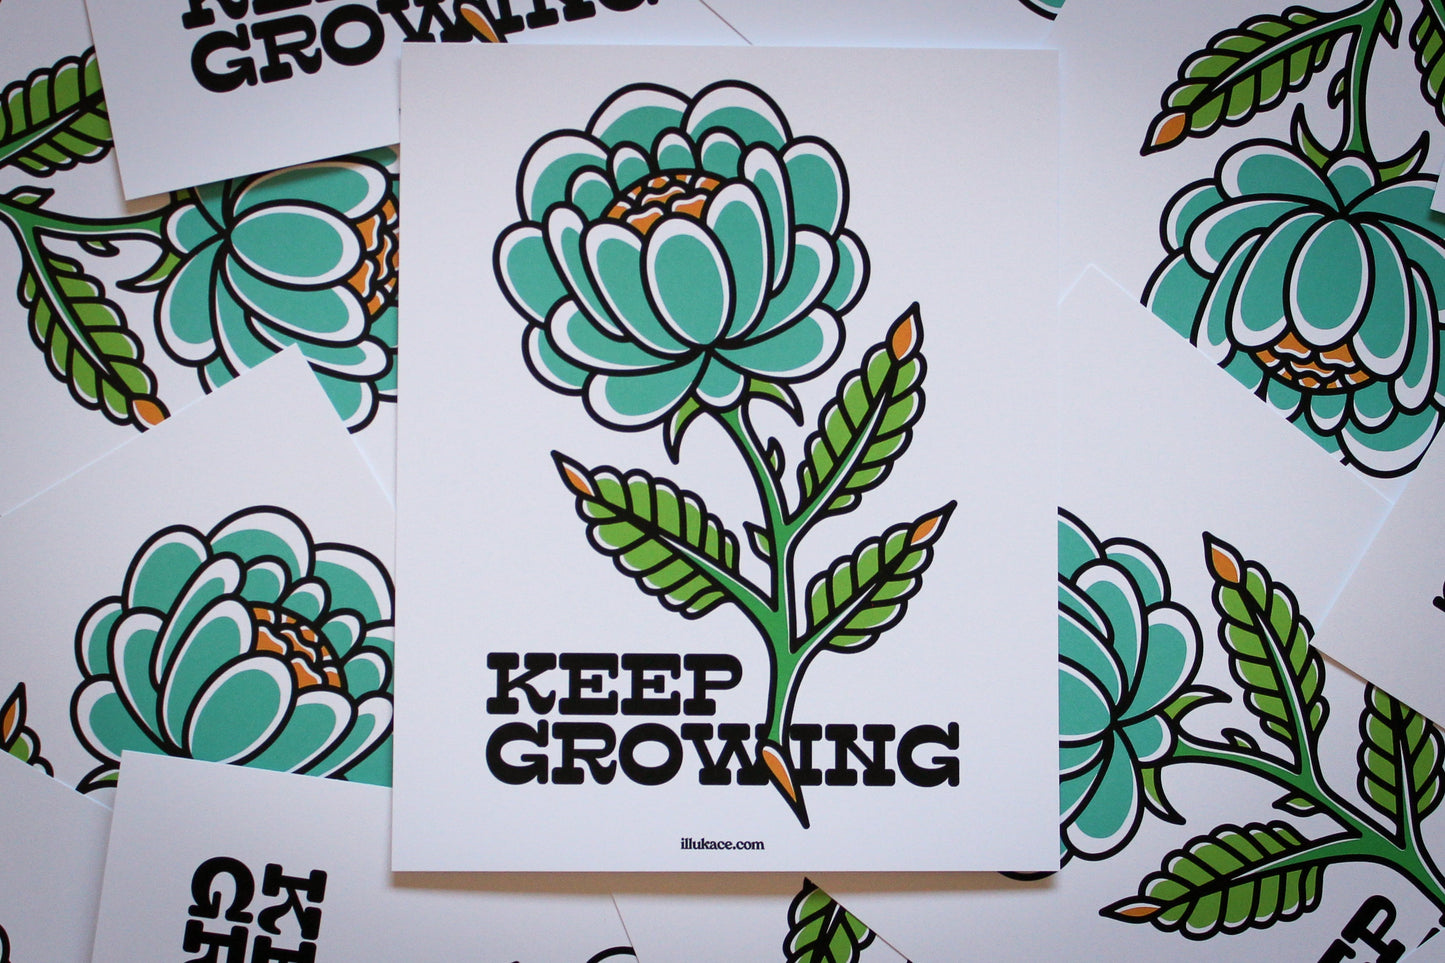 Keep Growing Art Print